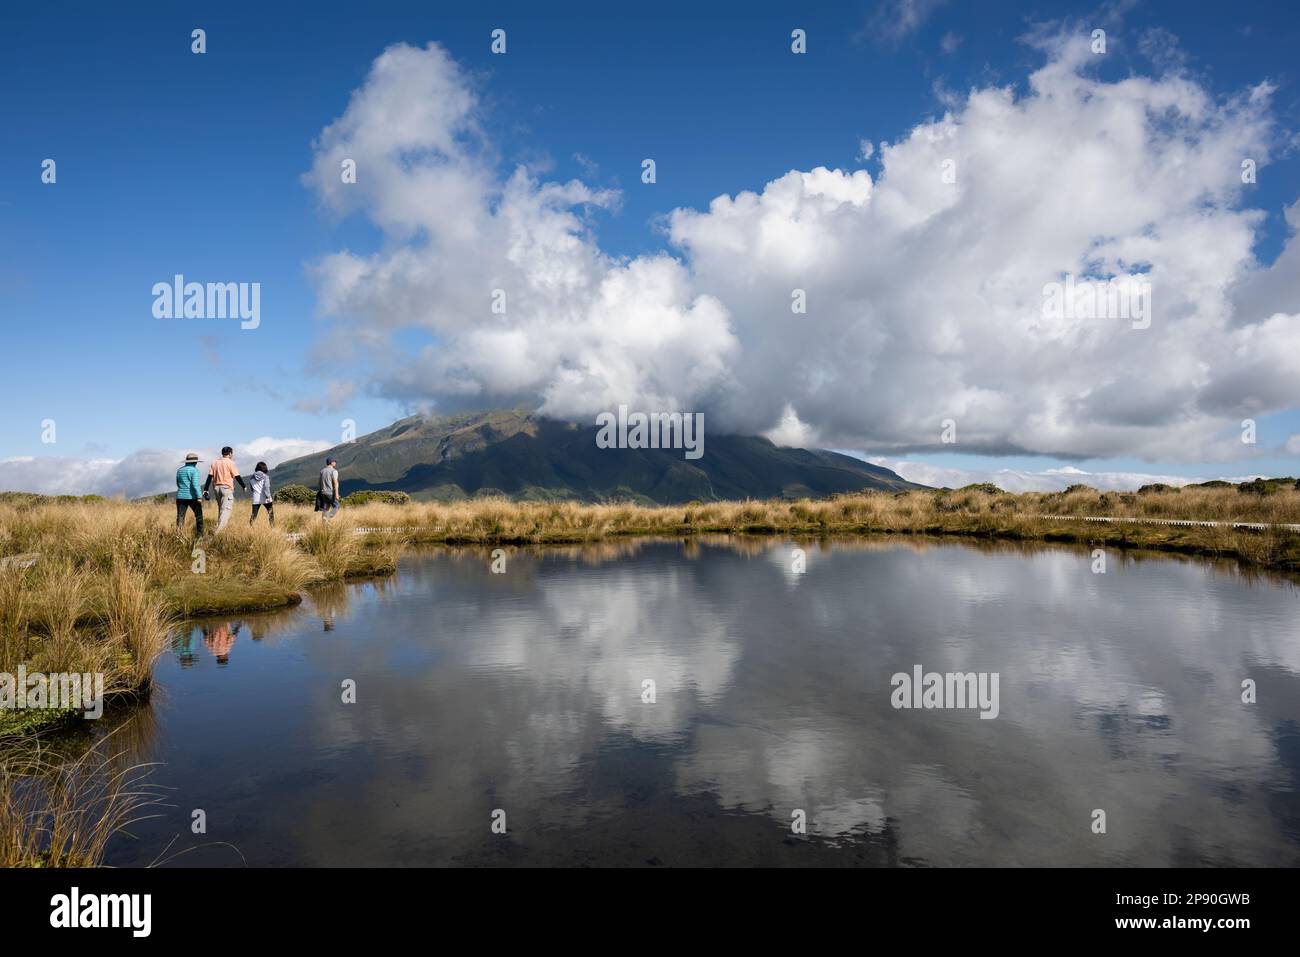 Quatre personnes randonnée à Pouakai Tarn. Mt Taranaki dans les nuages blancs, réfléchi dans le tarn. Taranaki. Nouvelle-Zélande. Banque D'Images